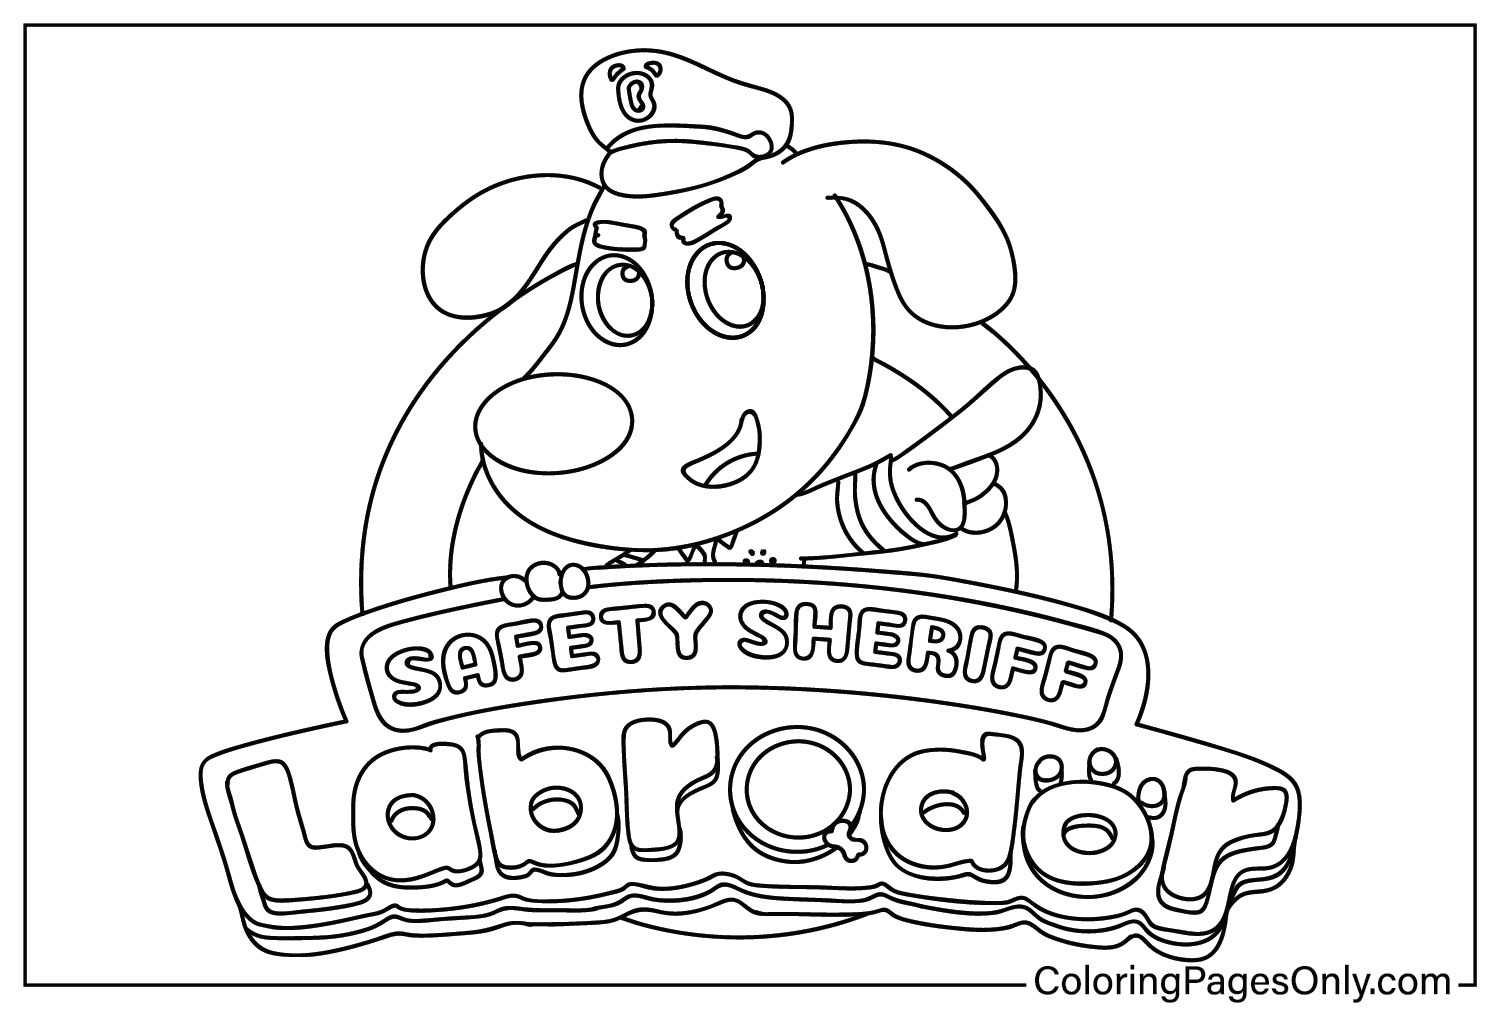 Изображения шерифа безопасности лабрадора для раскрашивания от шерифа безопасности лабрадора